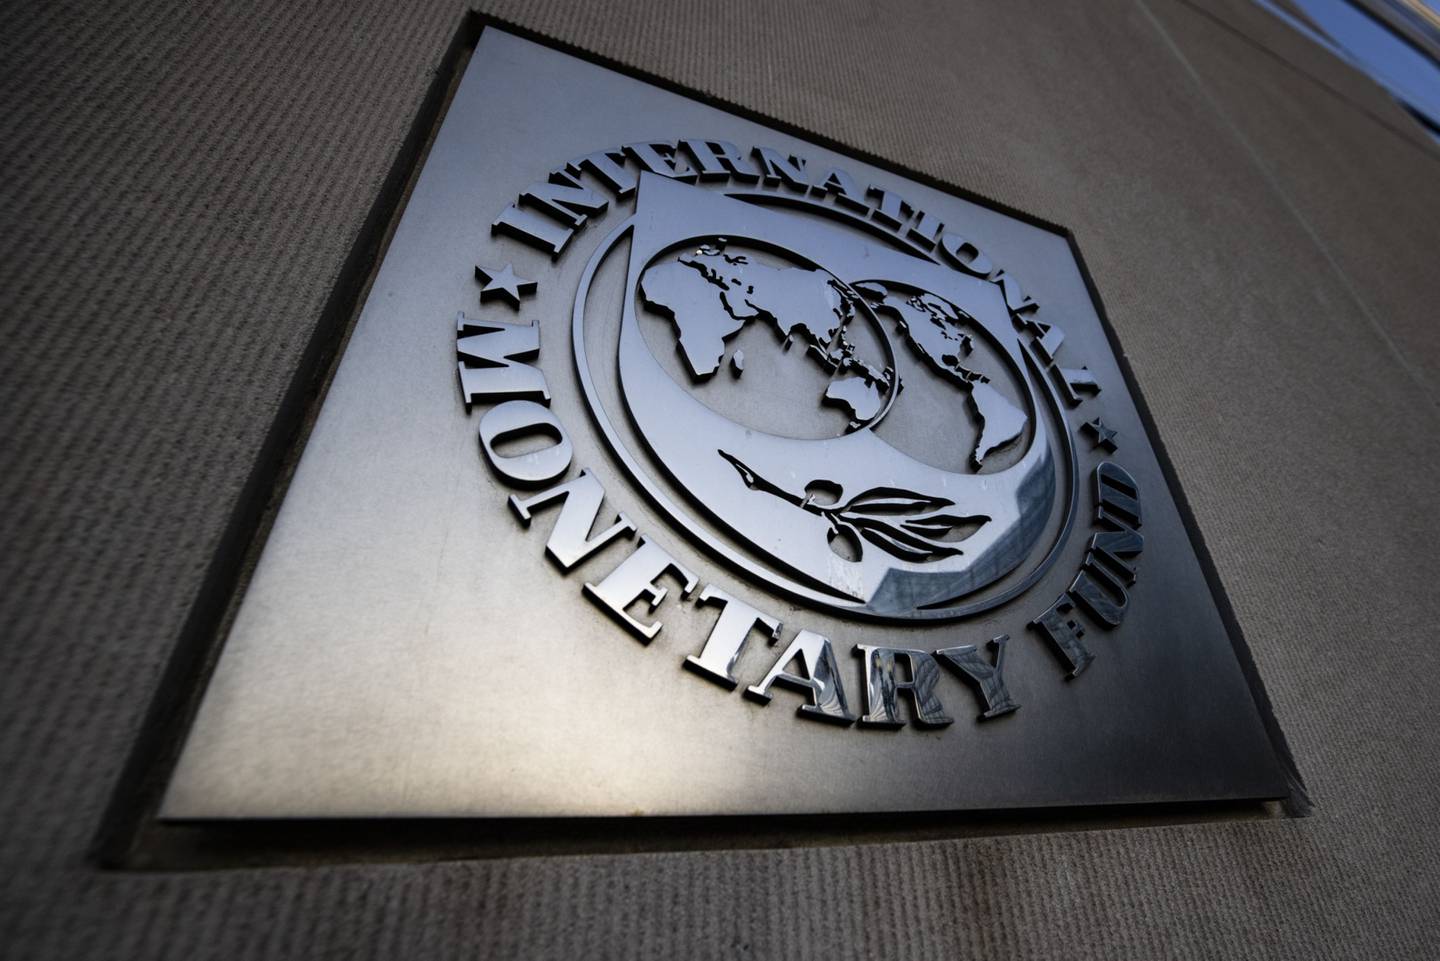 La sede del Fondo Monetario Internacional (FMI) en Washington, D.C., Estados Unidos, el sábado 3 de abril de 2021. El FMI mejorará la próxima semana sus previsiones de crecimiento económico mundial, impulsado por la mejora de las perspectivas de Estados Unidos y China, al tiempo que advierte de la elevada incertidumbre y las nuevas cepas de virus que amenazan con frenar el repunte. Fotógrafo: Samuel Corum/Bloomberg